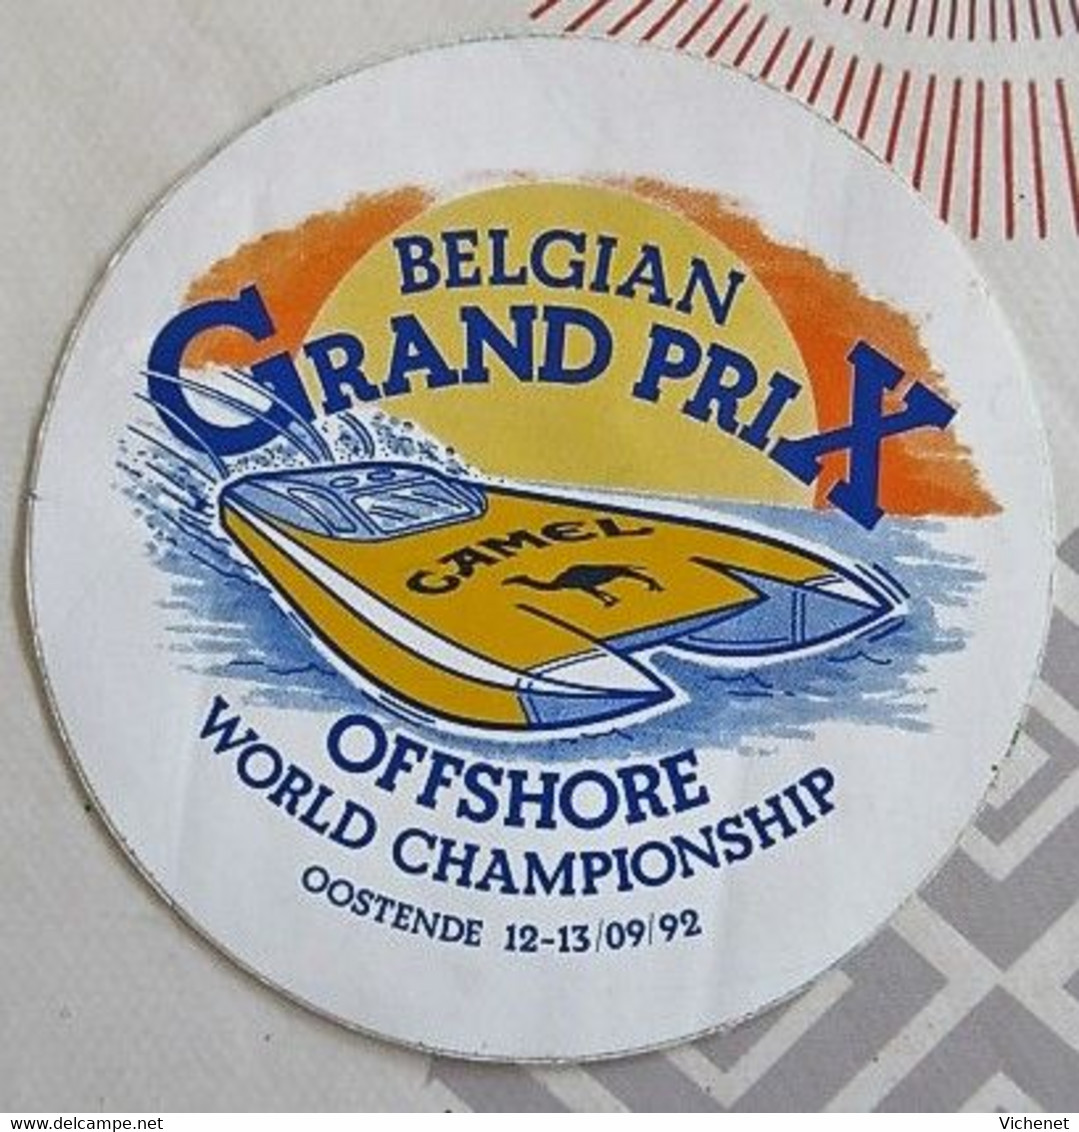 CAMEL - Belgium Grand Prix - Offshore World Championship - Oostende 12-13 / 09 / 92 - Reclame-artikelen